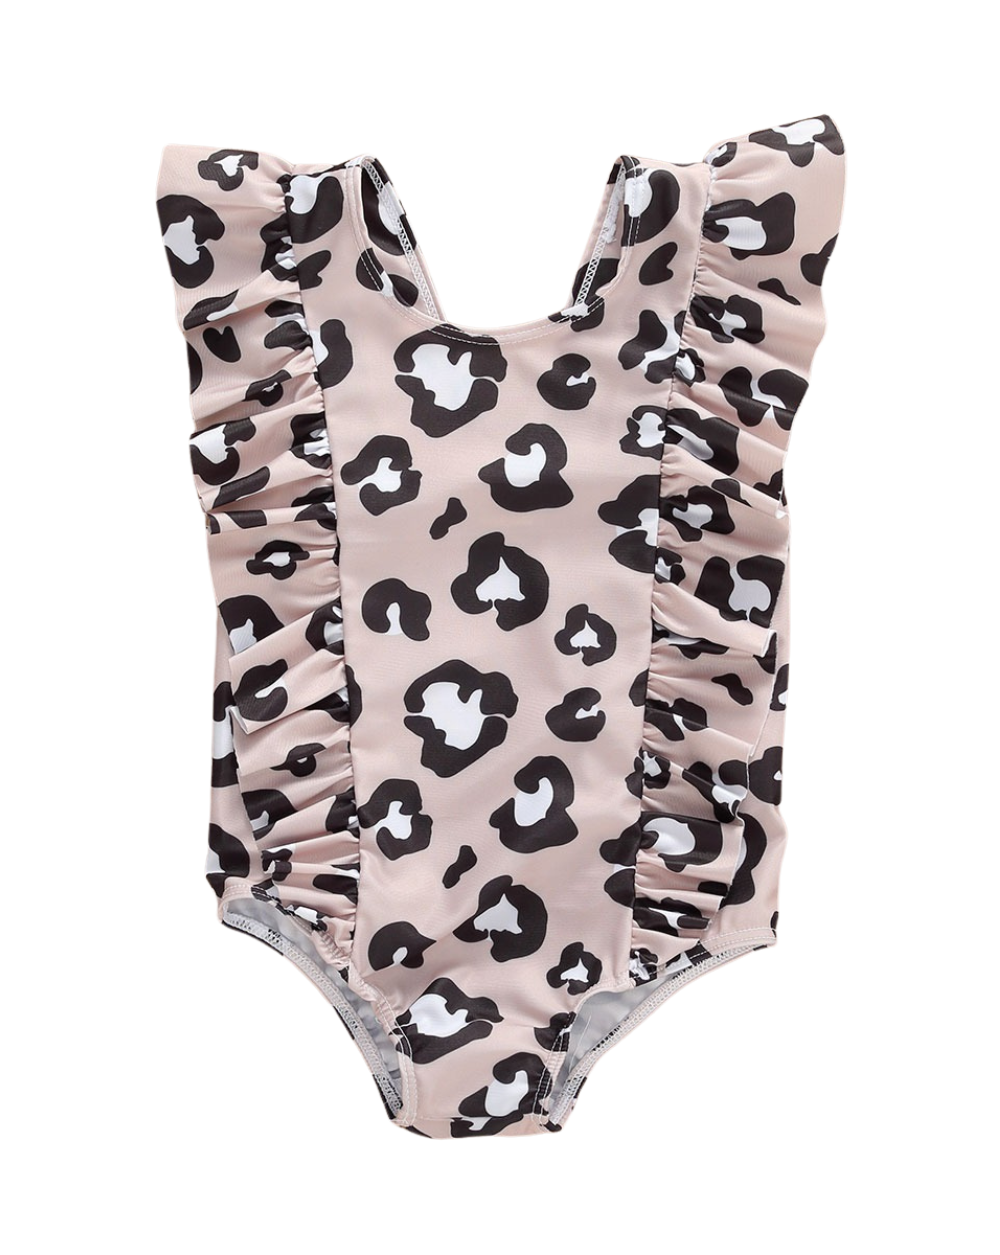 Leopard Print Bathing Suit